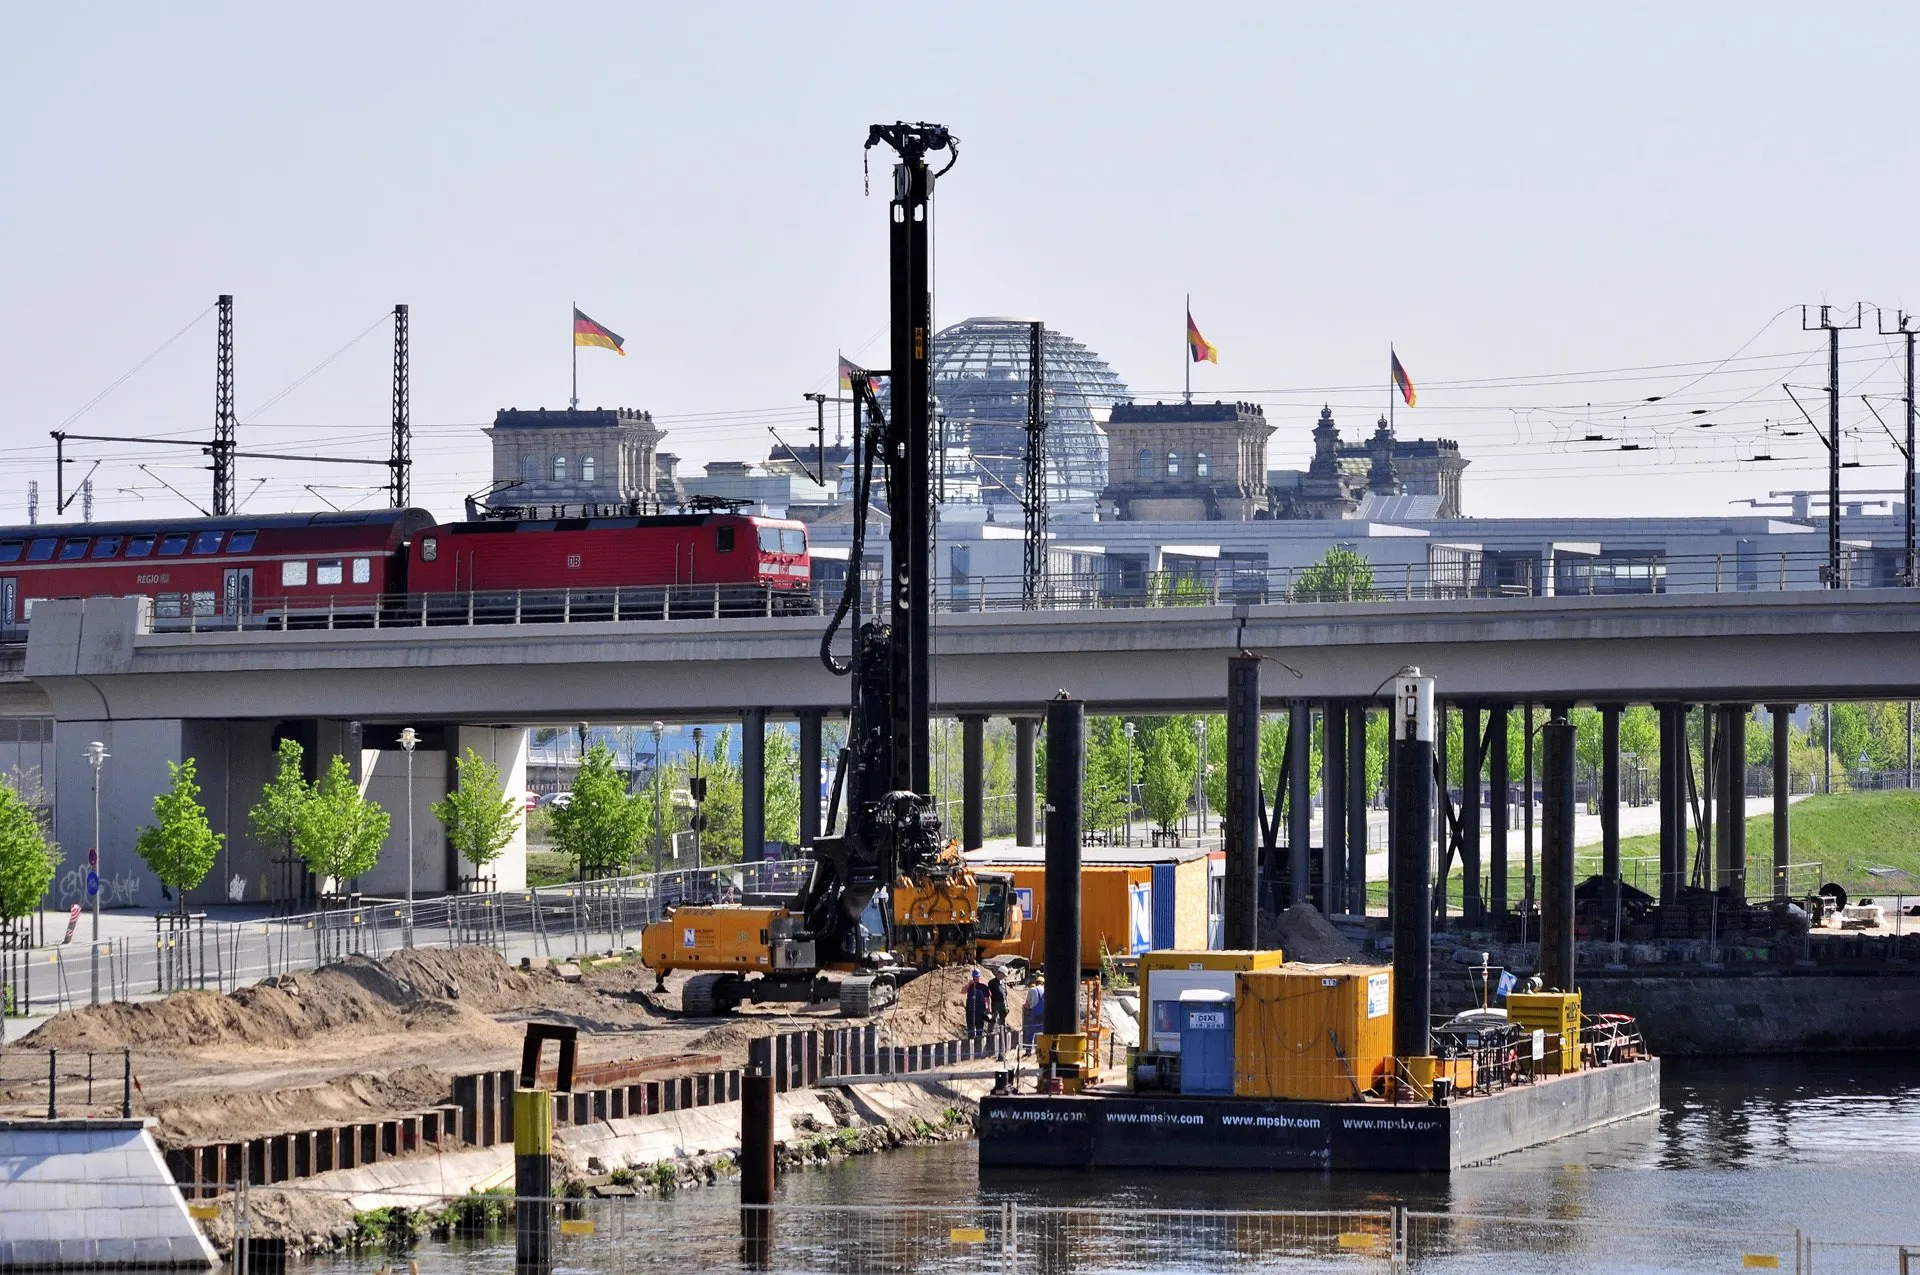 Baustelle im Humboldthafen Berlin mit Reichstagsgebäude im Hintergrund